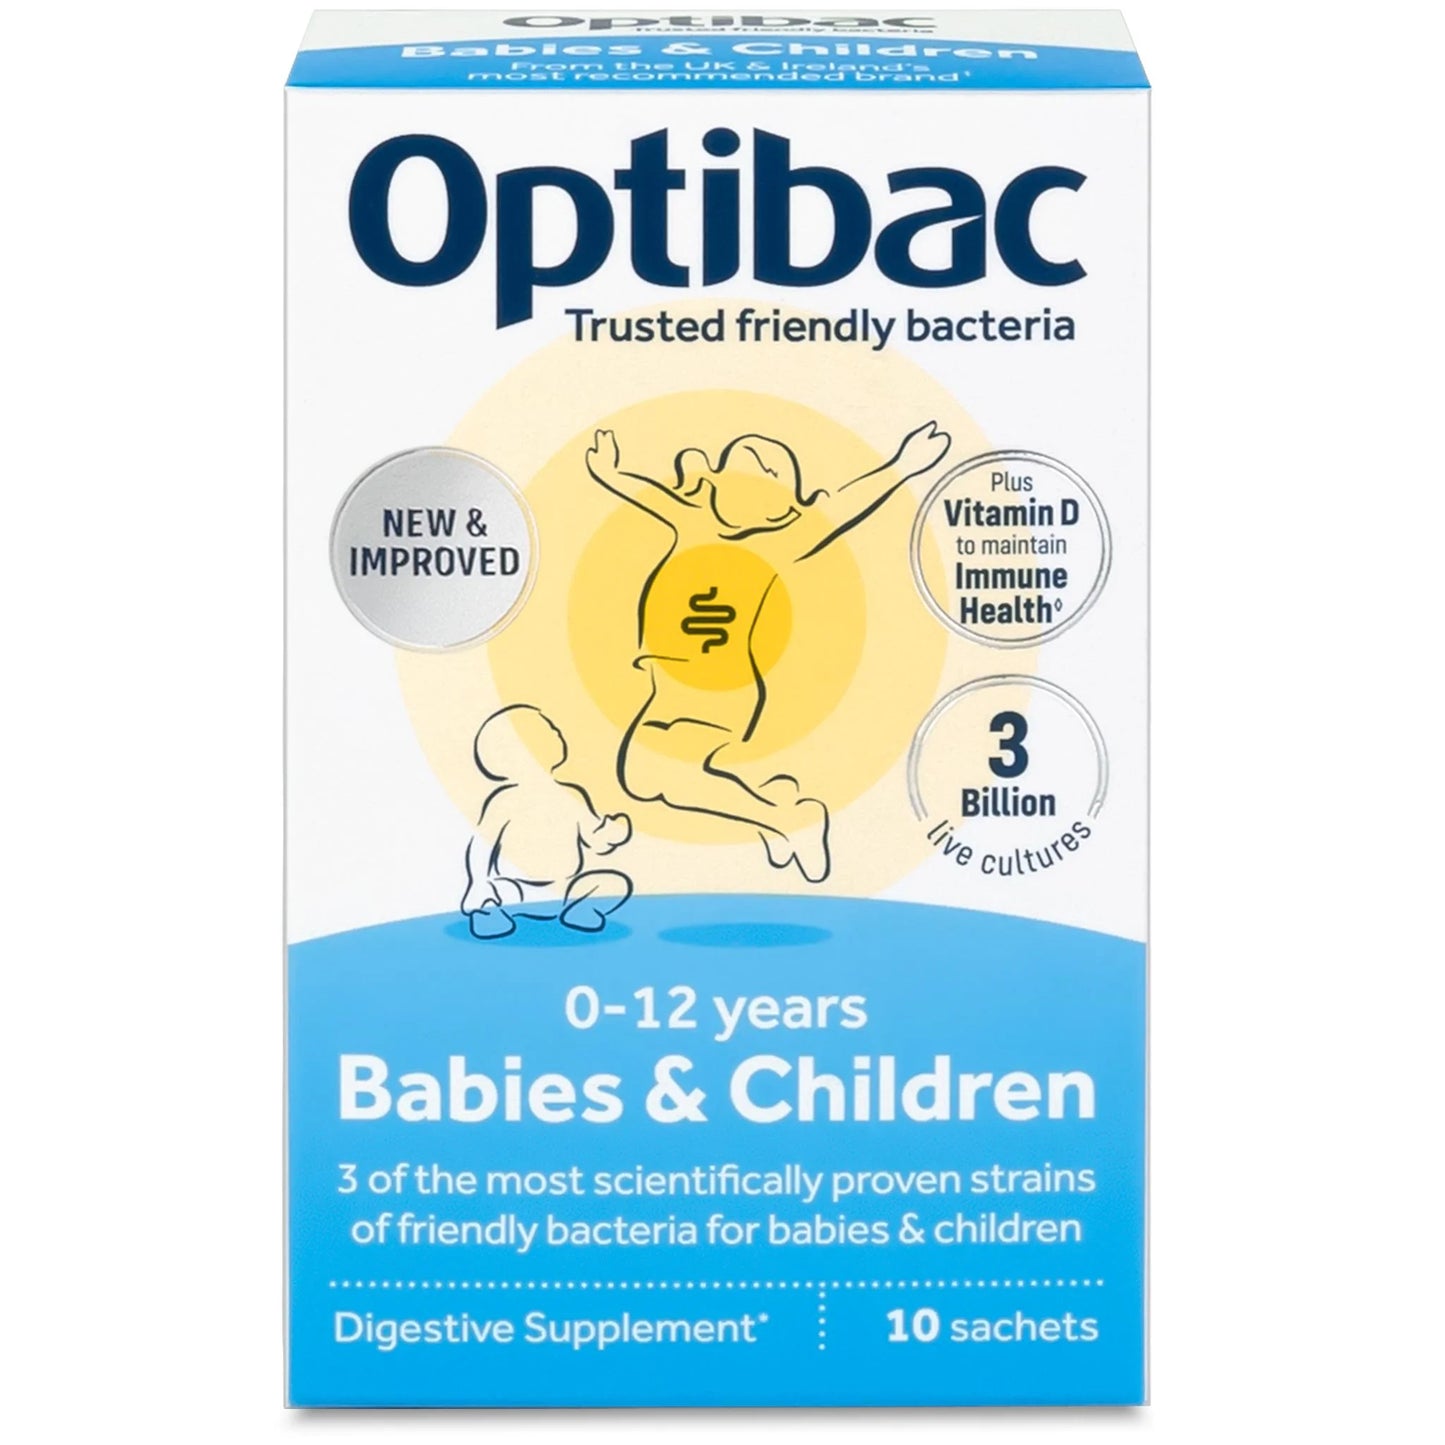 OPTIBAC PROBIOTICS FOR BABIES & CHILDREN